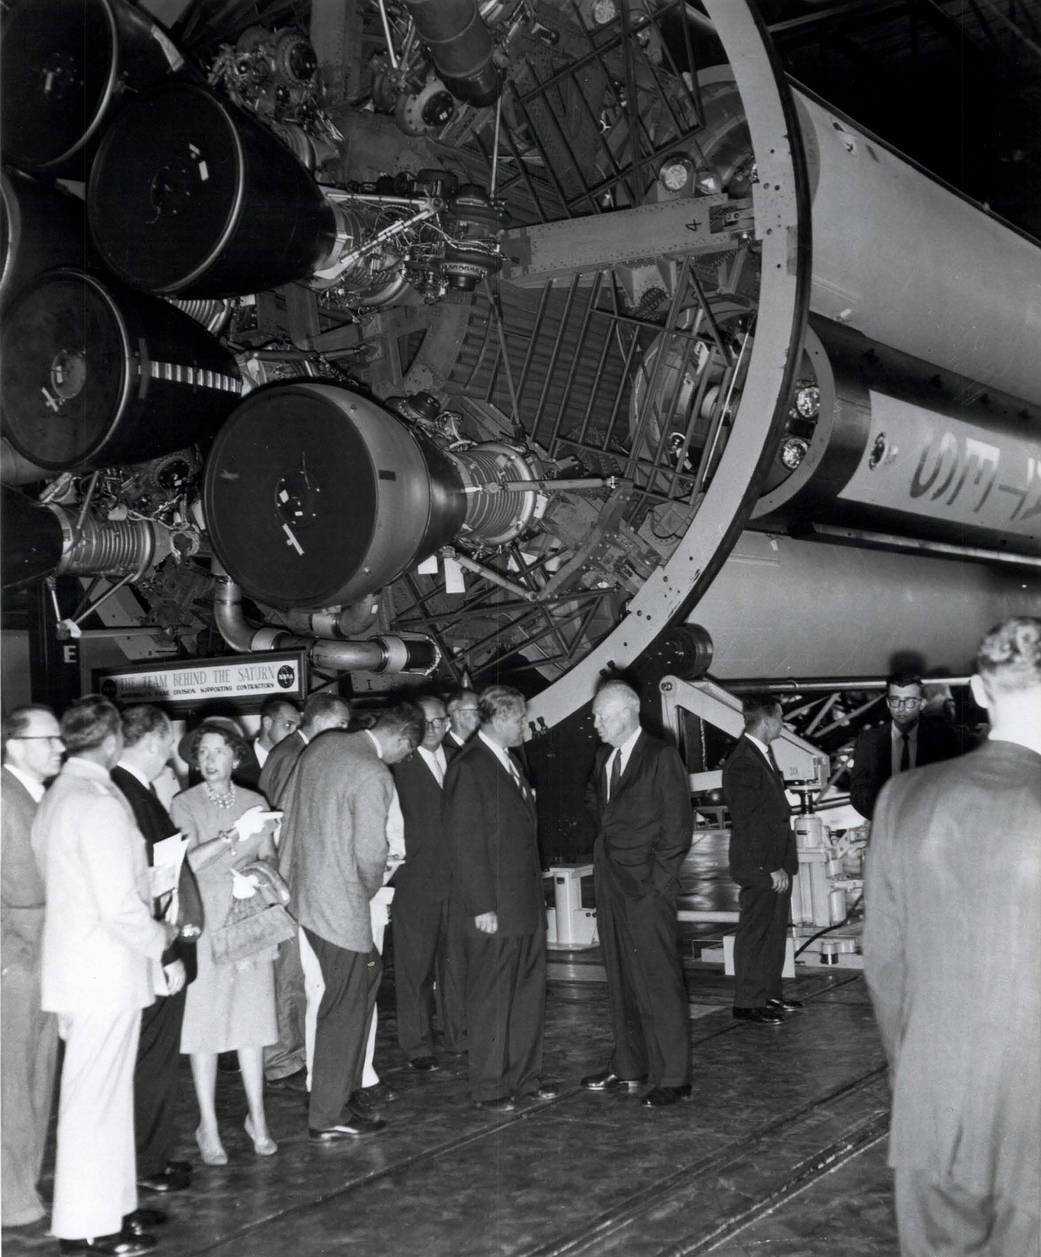 On September 8, 1960, President Eisenhower visited Huntsville, Ala. to dedicate the new NASA field center as the George C. Marsh